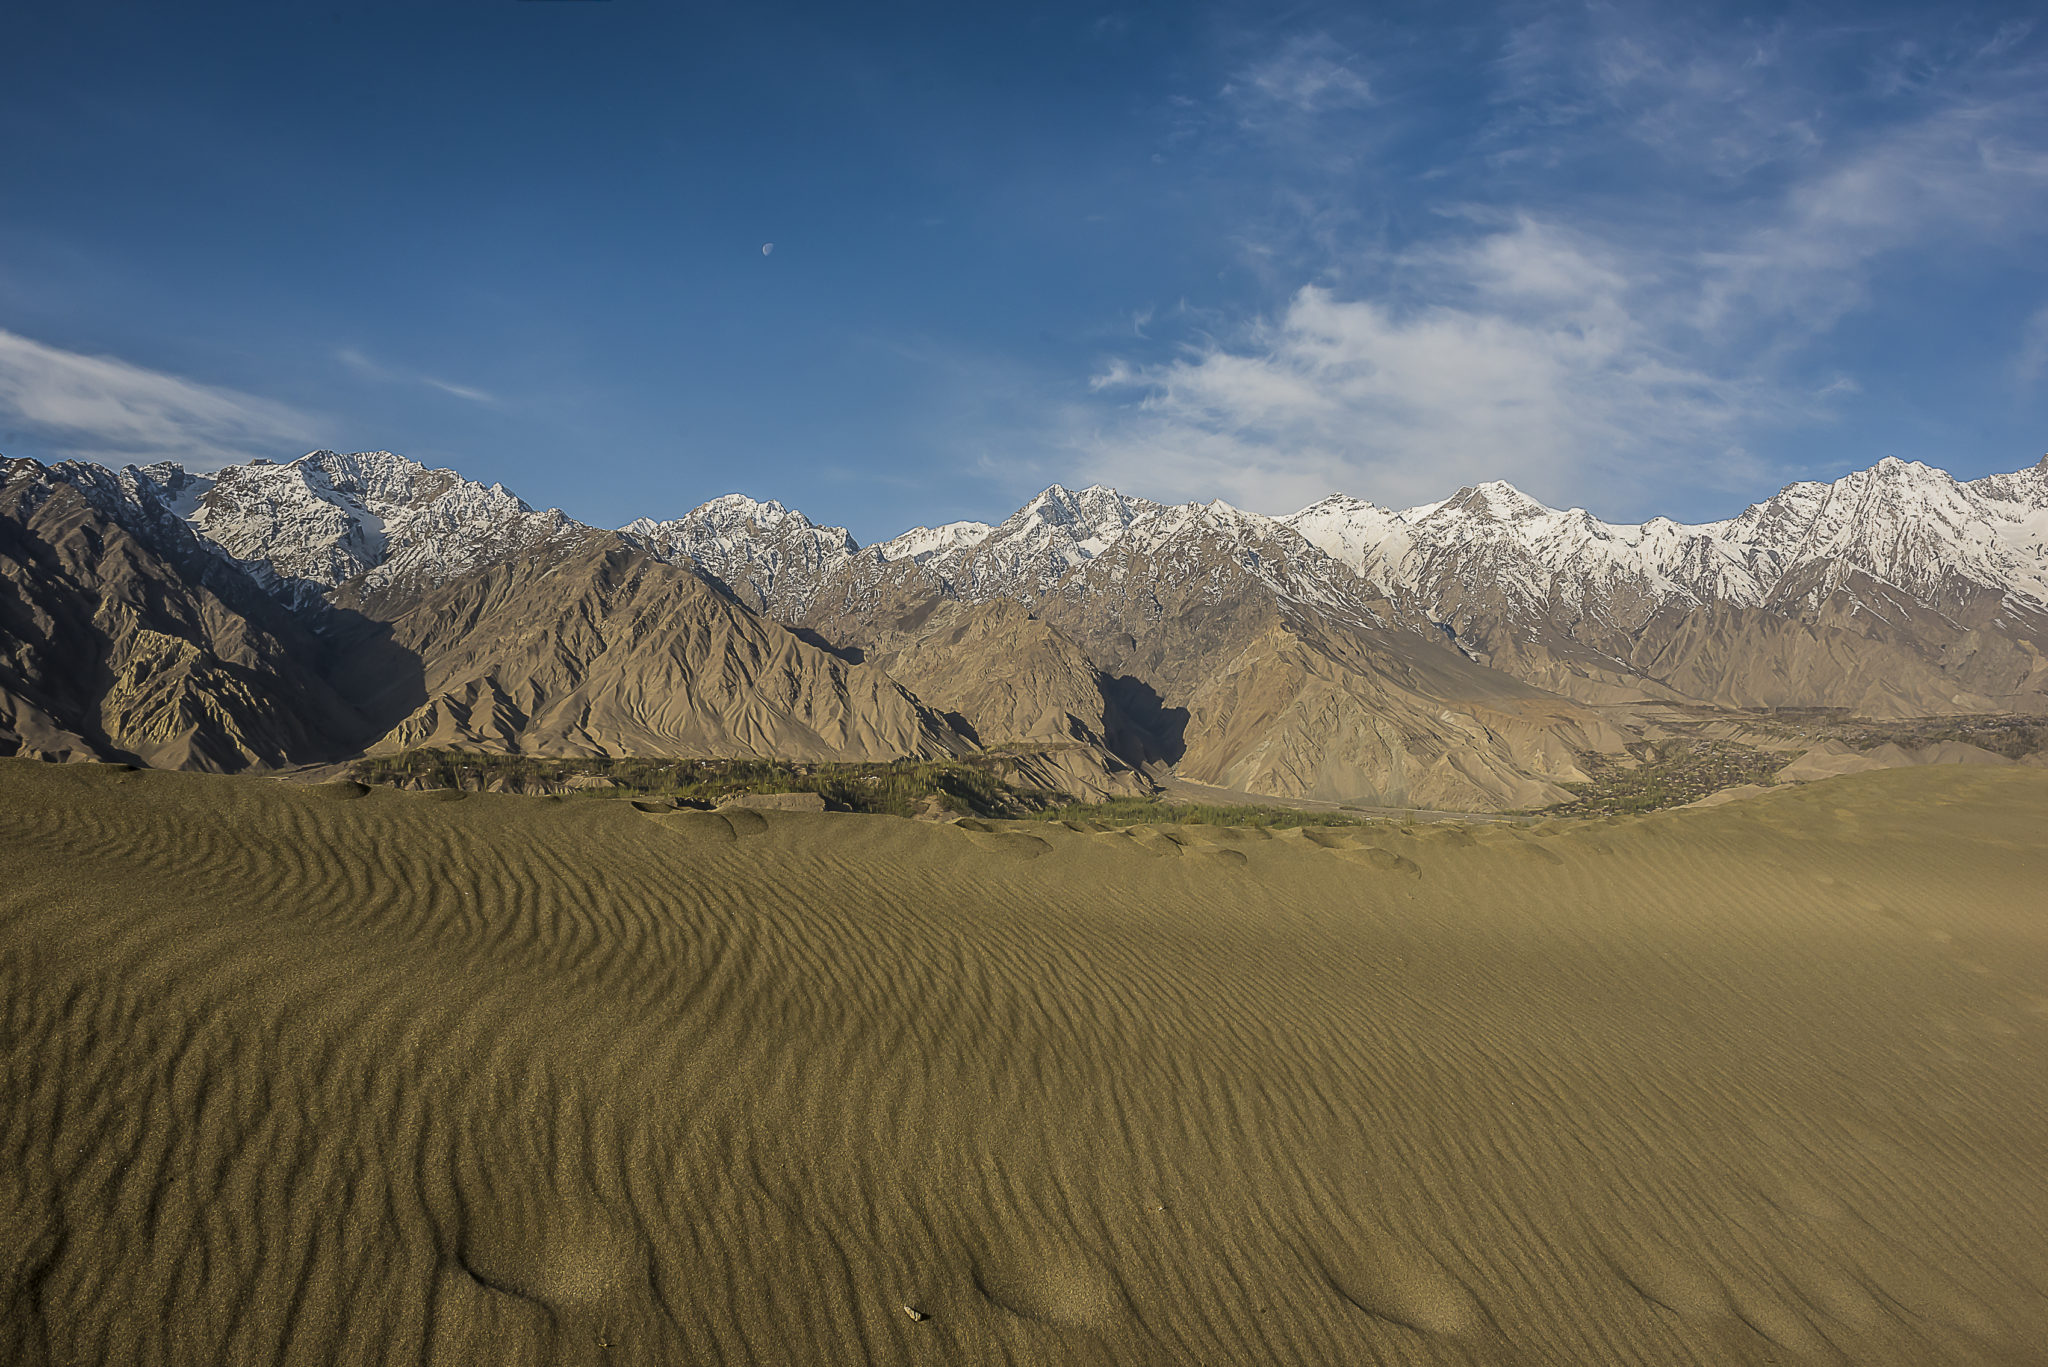 When desert meets mountains – Pakistan